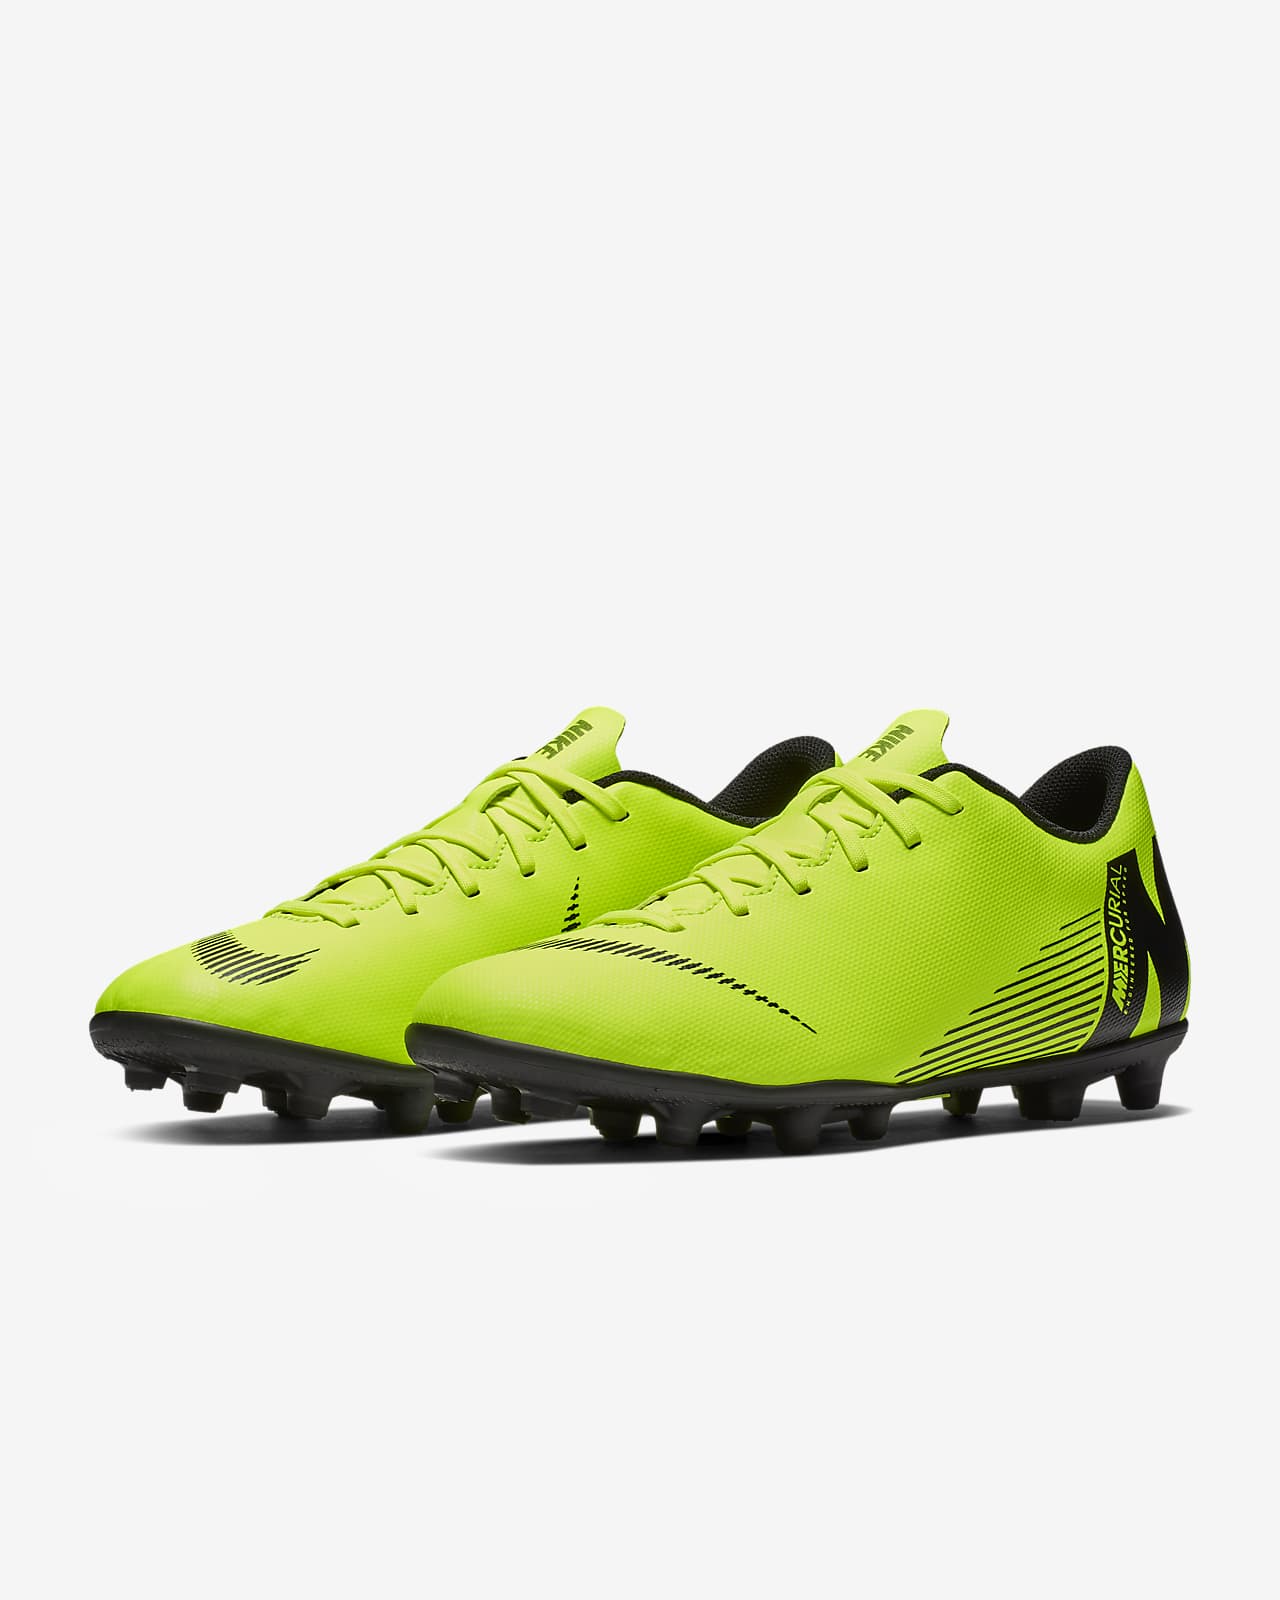 Calzado de fútbol para múltiples superficies Nike Mercurial Vapor XII Club.  Nike.com